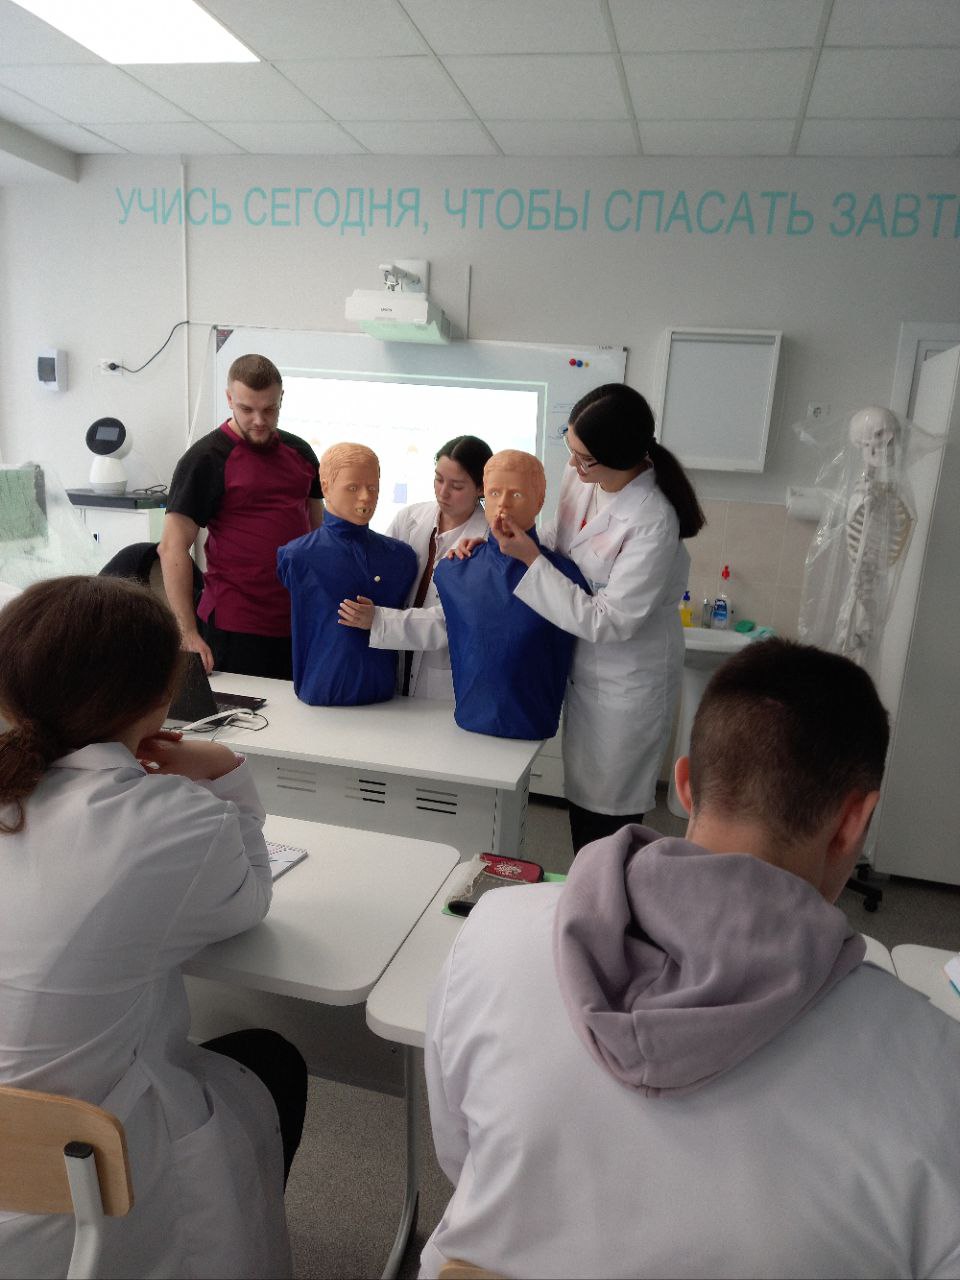 Впечатления о занятии в медицинском классе в СОШ№1 г. Строитель.